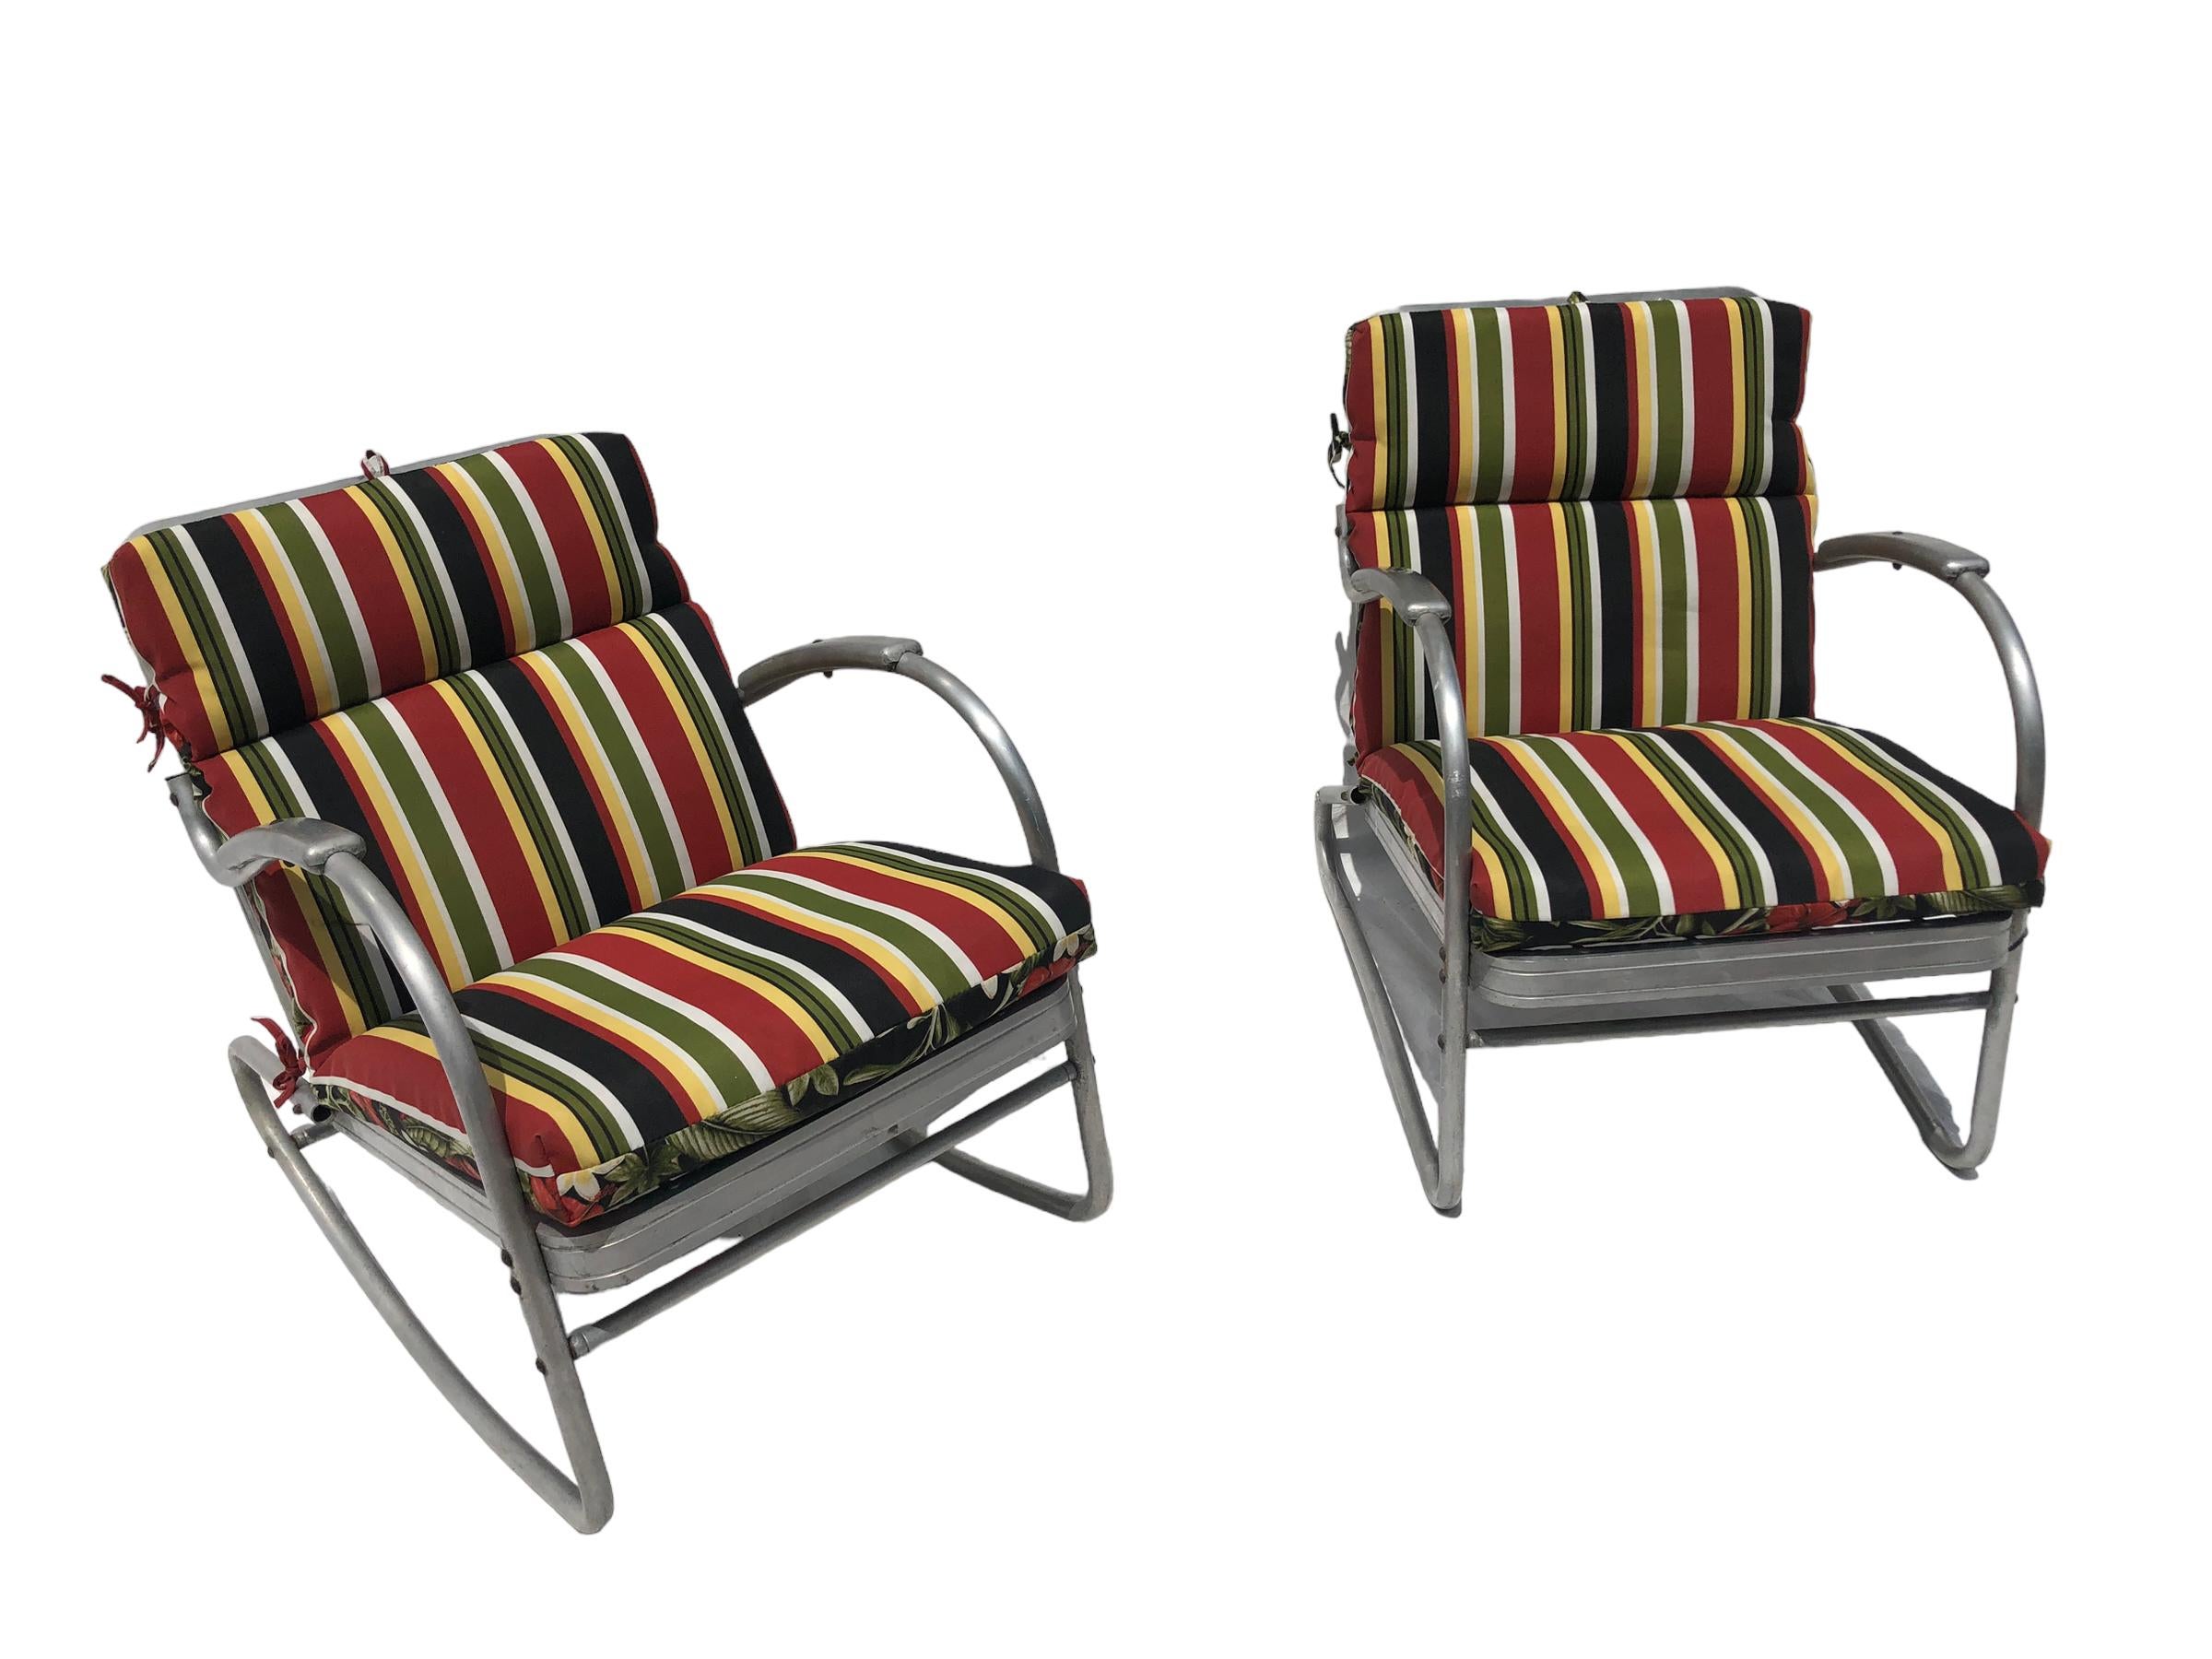 Paar Vintage Aluminium Terrassenstühle. Der eine ist eine Wippe und der andere ein normaler Stuhl. Die Kissen sind von der Stange und könnten eine maßgeschneiderte Kissen verwenden. Signiert auf dem Rahmen 